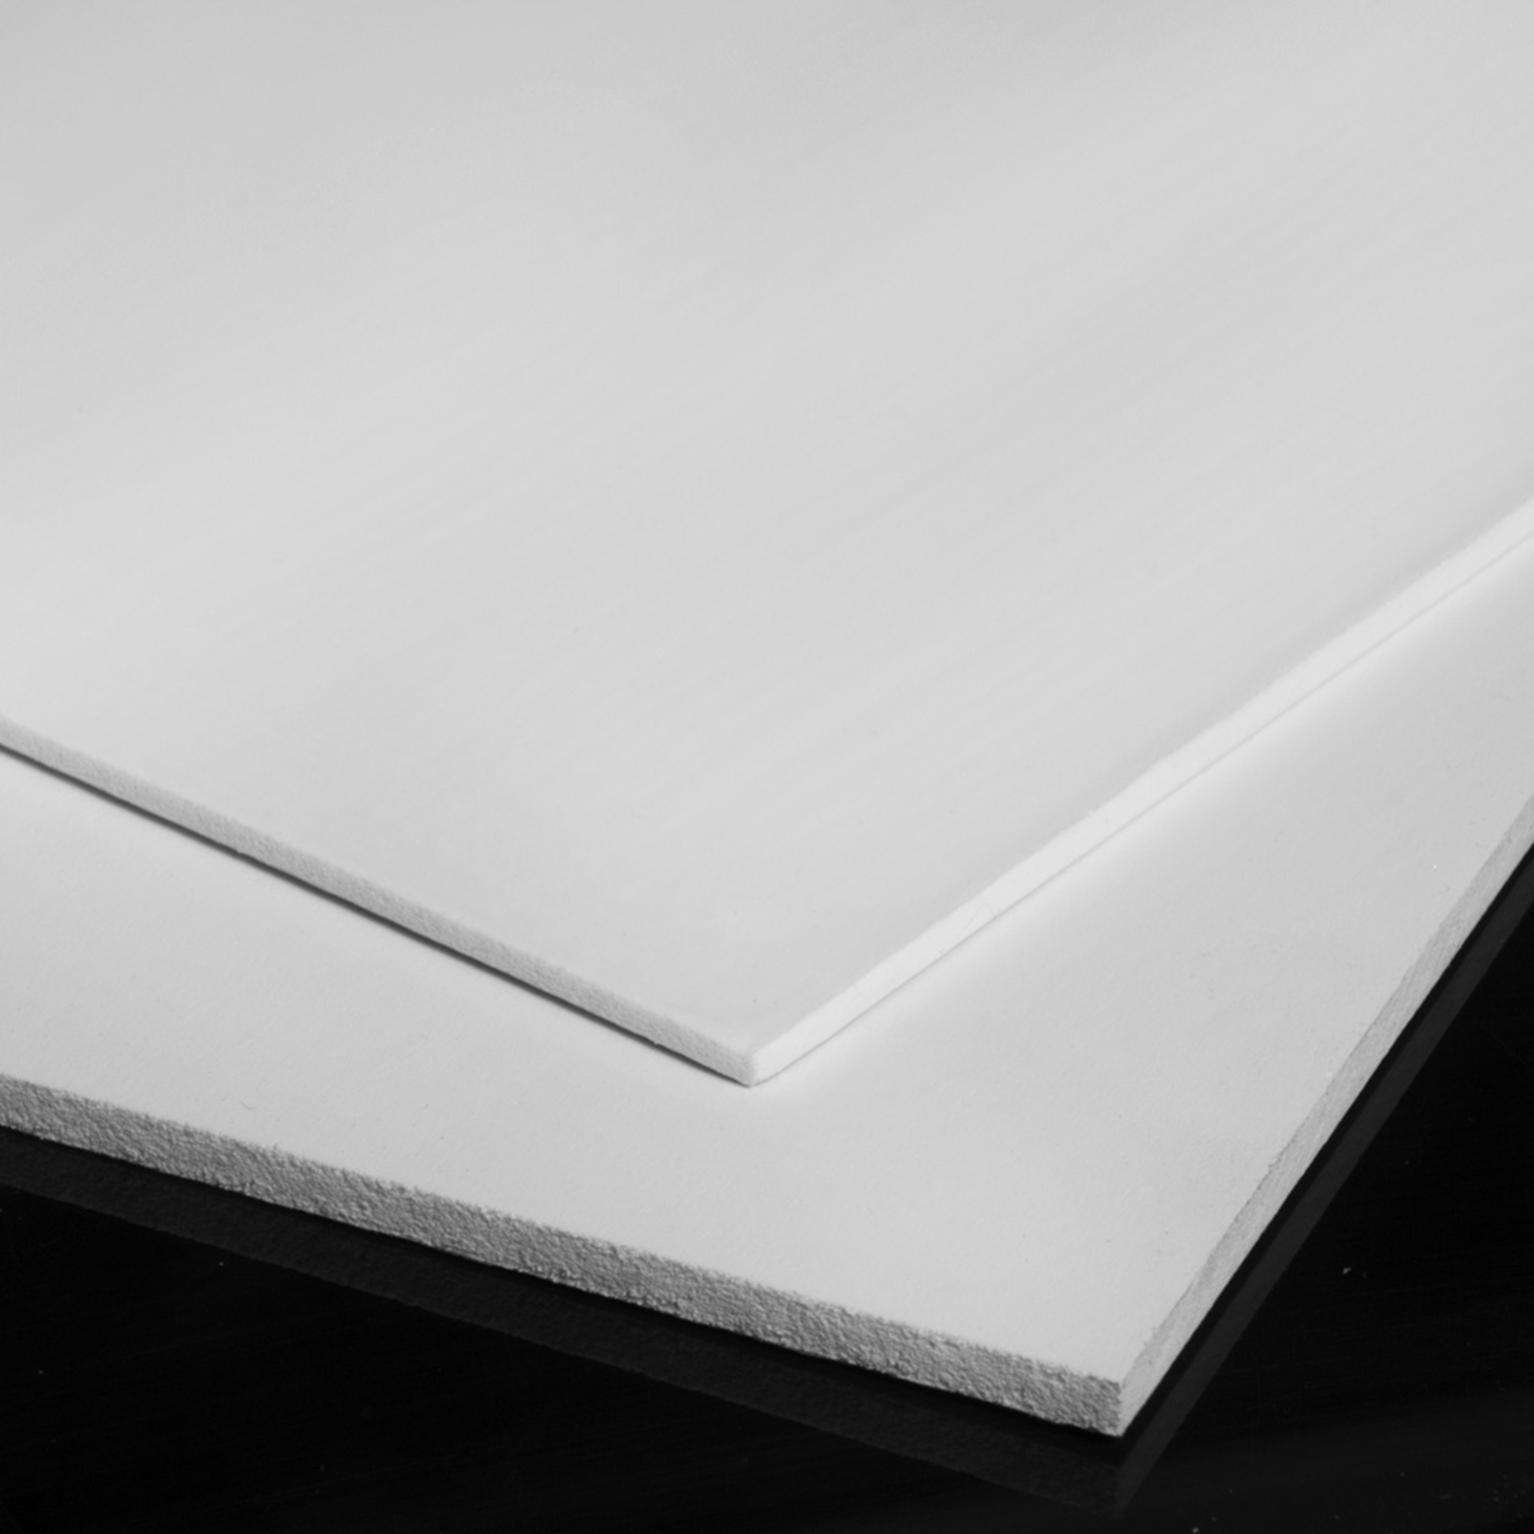 Plaque Komacel Blanc PVC - Profil Nature Dimension en mm 3050 x 1220 x 4